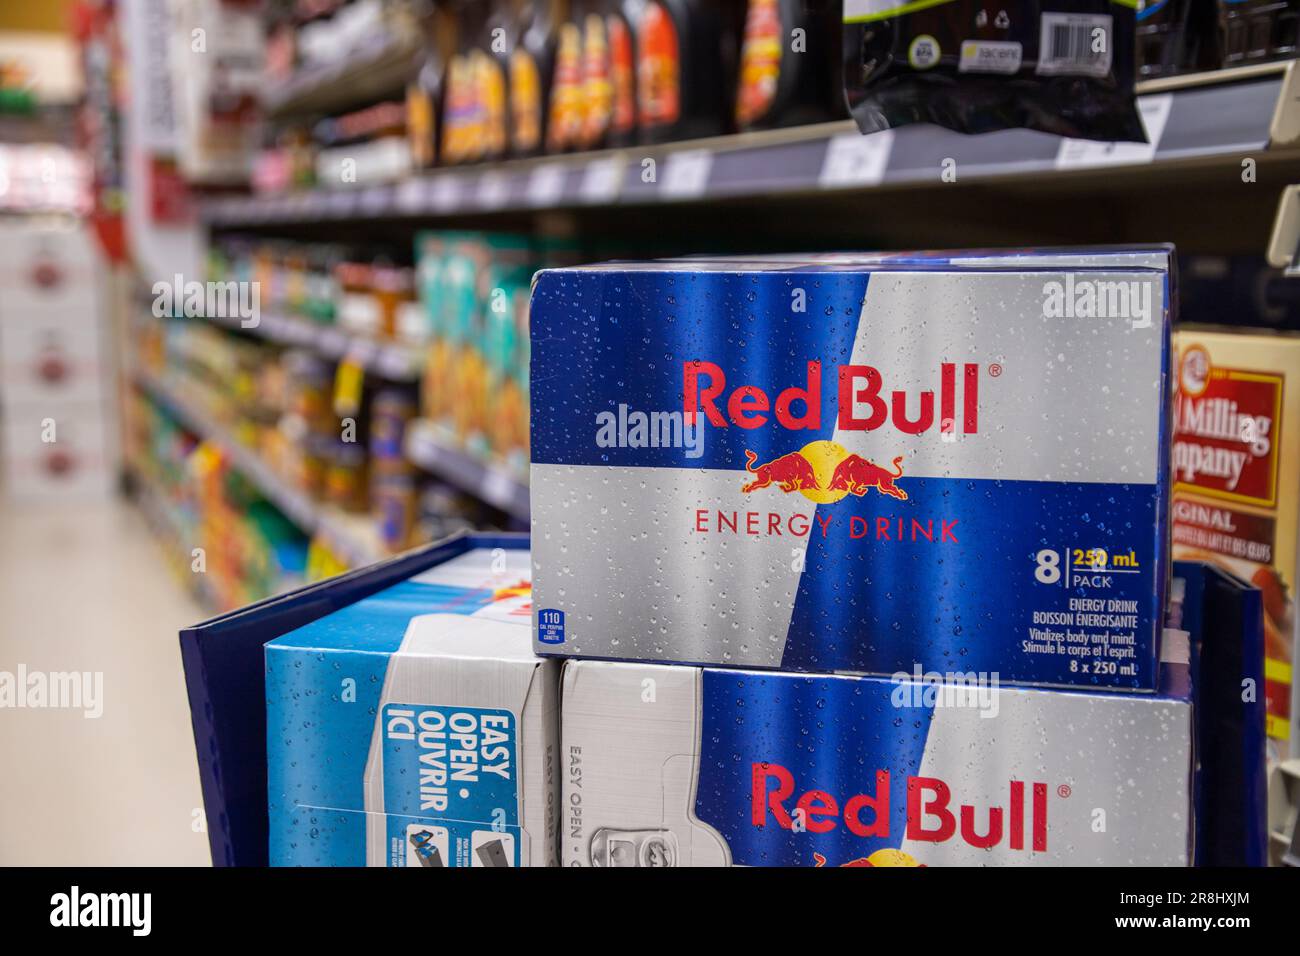 8 Dosen Red Bull werden im Lebensmittelgeschäft ausgestellt. Red Bull ist eine beliebte Energy-Drink-Marke des österreichischen Unternehmens Red Bull GmbH. Stockfoto